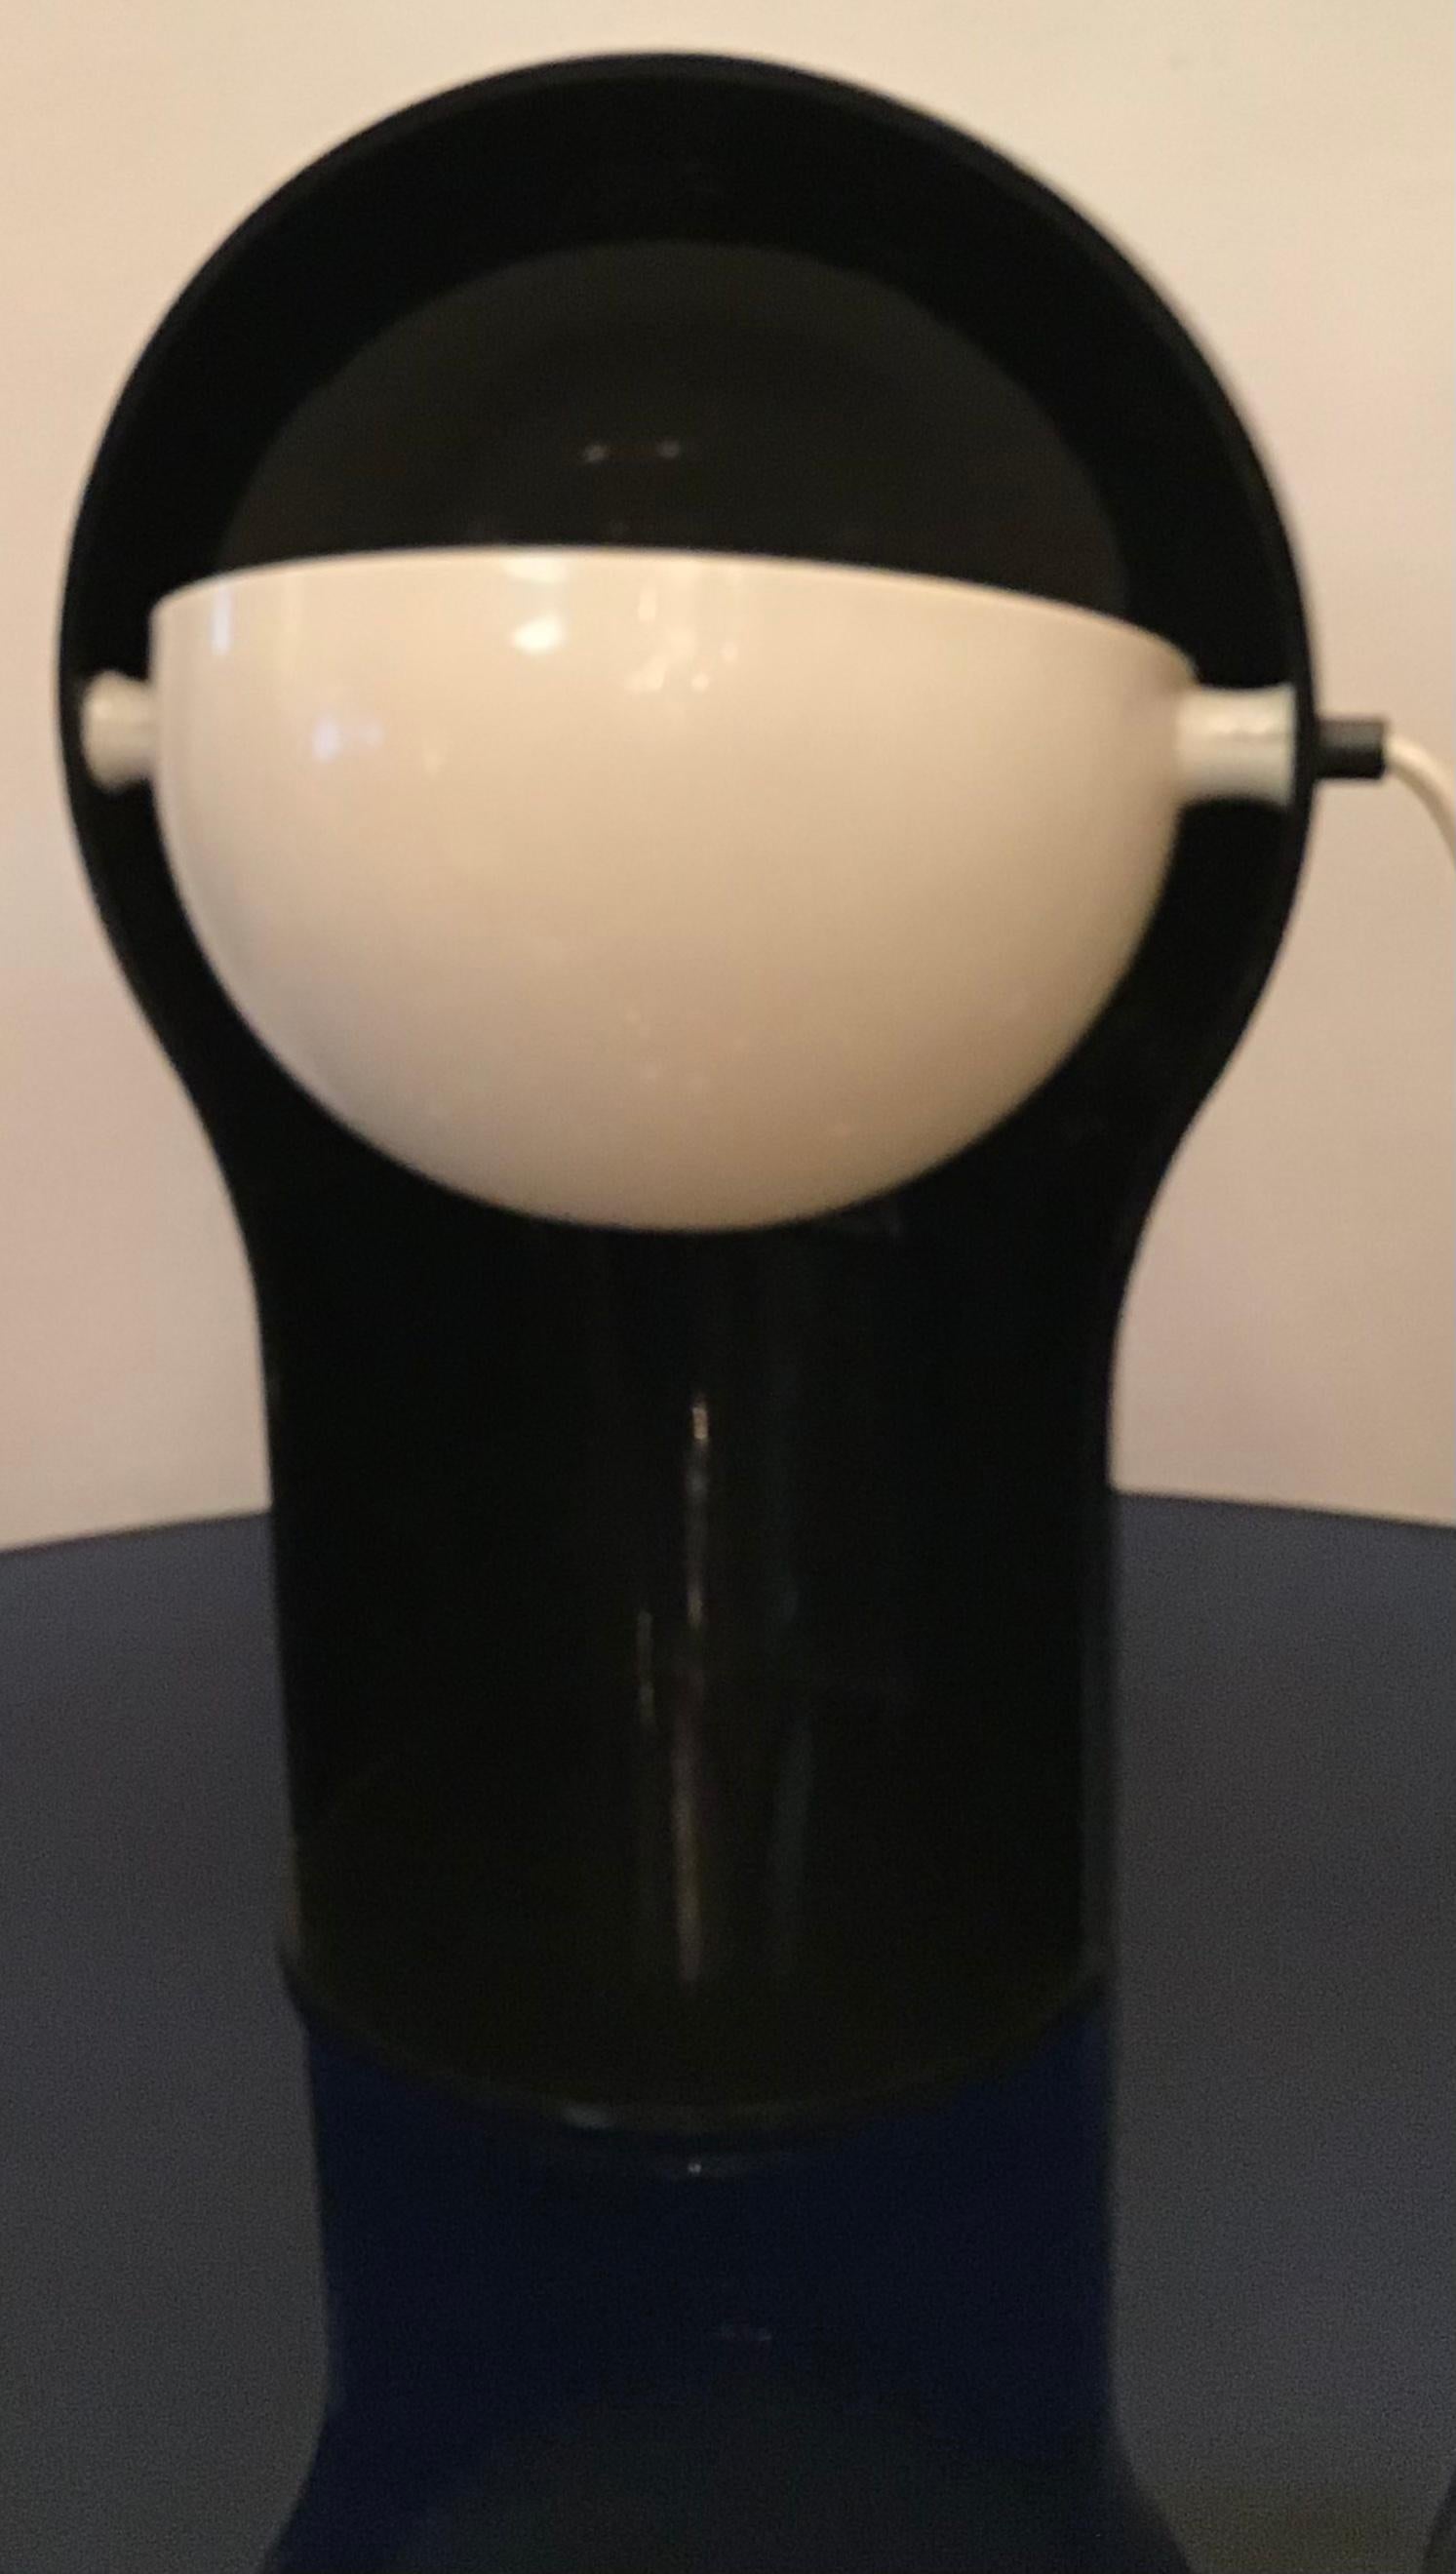 Plexiglass Vico Magistretti “Telegono” Table Lamp 1966 Perplex, Italy For Sale